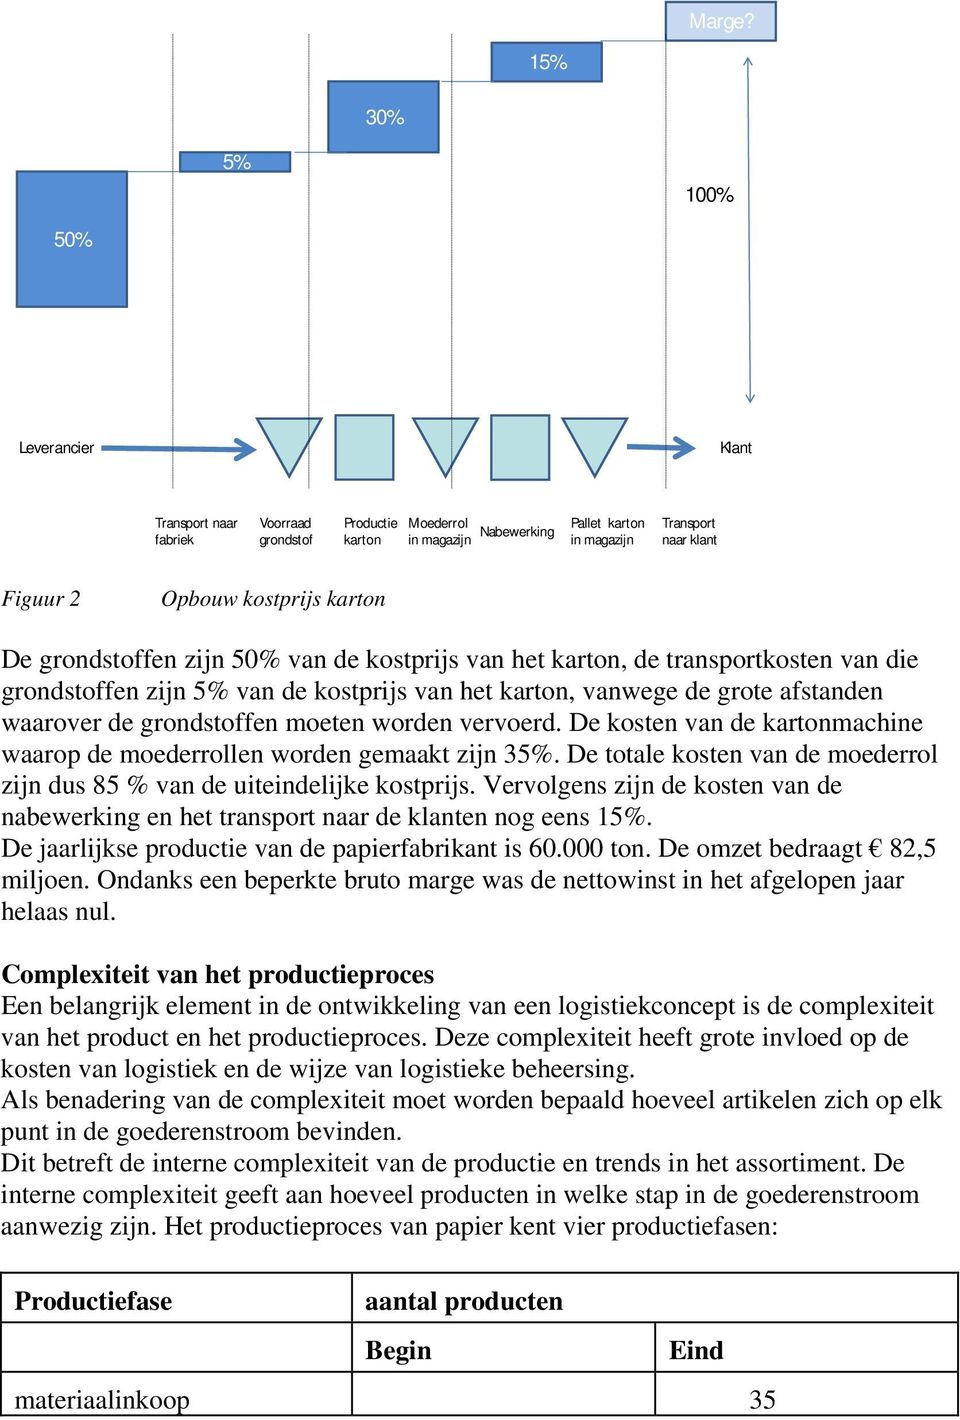 kostprijs karton De grondstoffen zijn 50% van de kostprijs van het karton, de transportkosten van die grondstoffen zijn 5% van de kostprijs van het karton, vanwege de grote afstanden waarover de